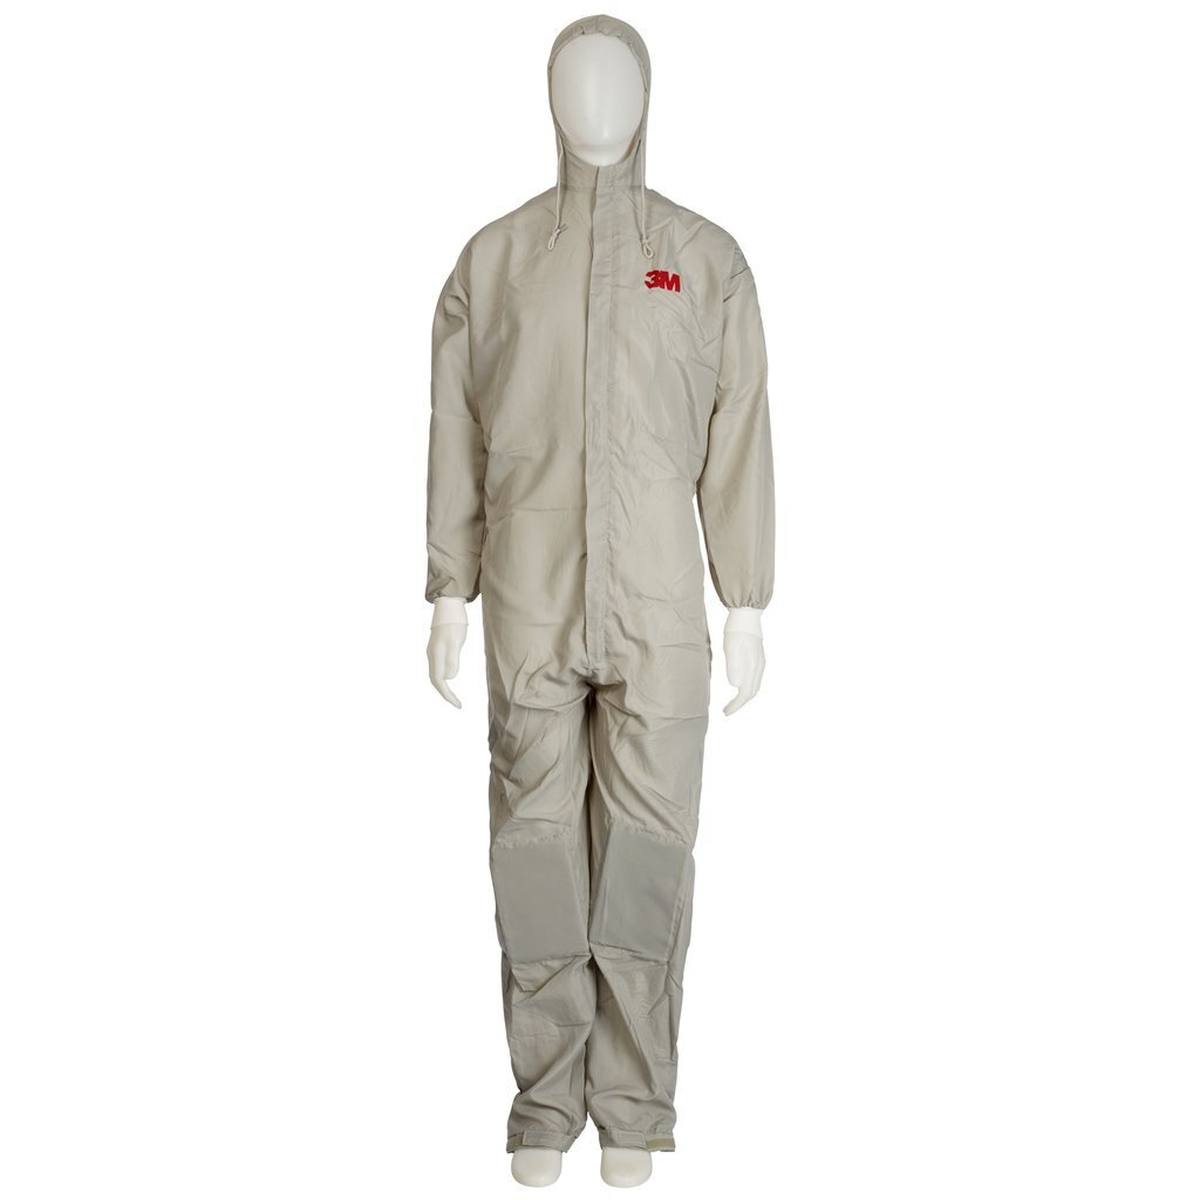 Combinaison de protection 3M 50425, taille XL, respirante, genouillères, poches pour pantalon, matériau : tissu polyester léger, poches latérales, ouvertures dans le dos pour l'évacuation de la chaleur